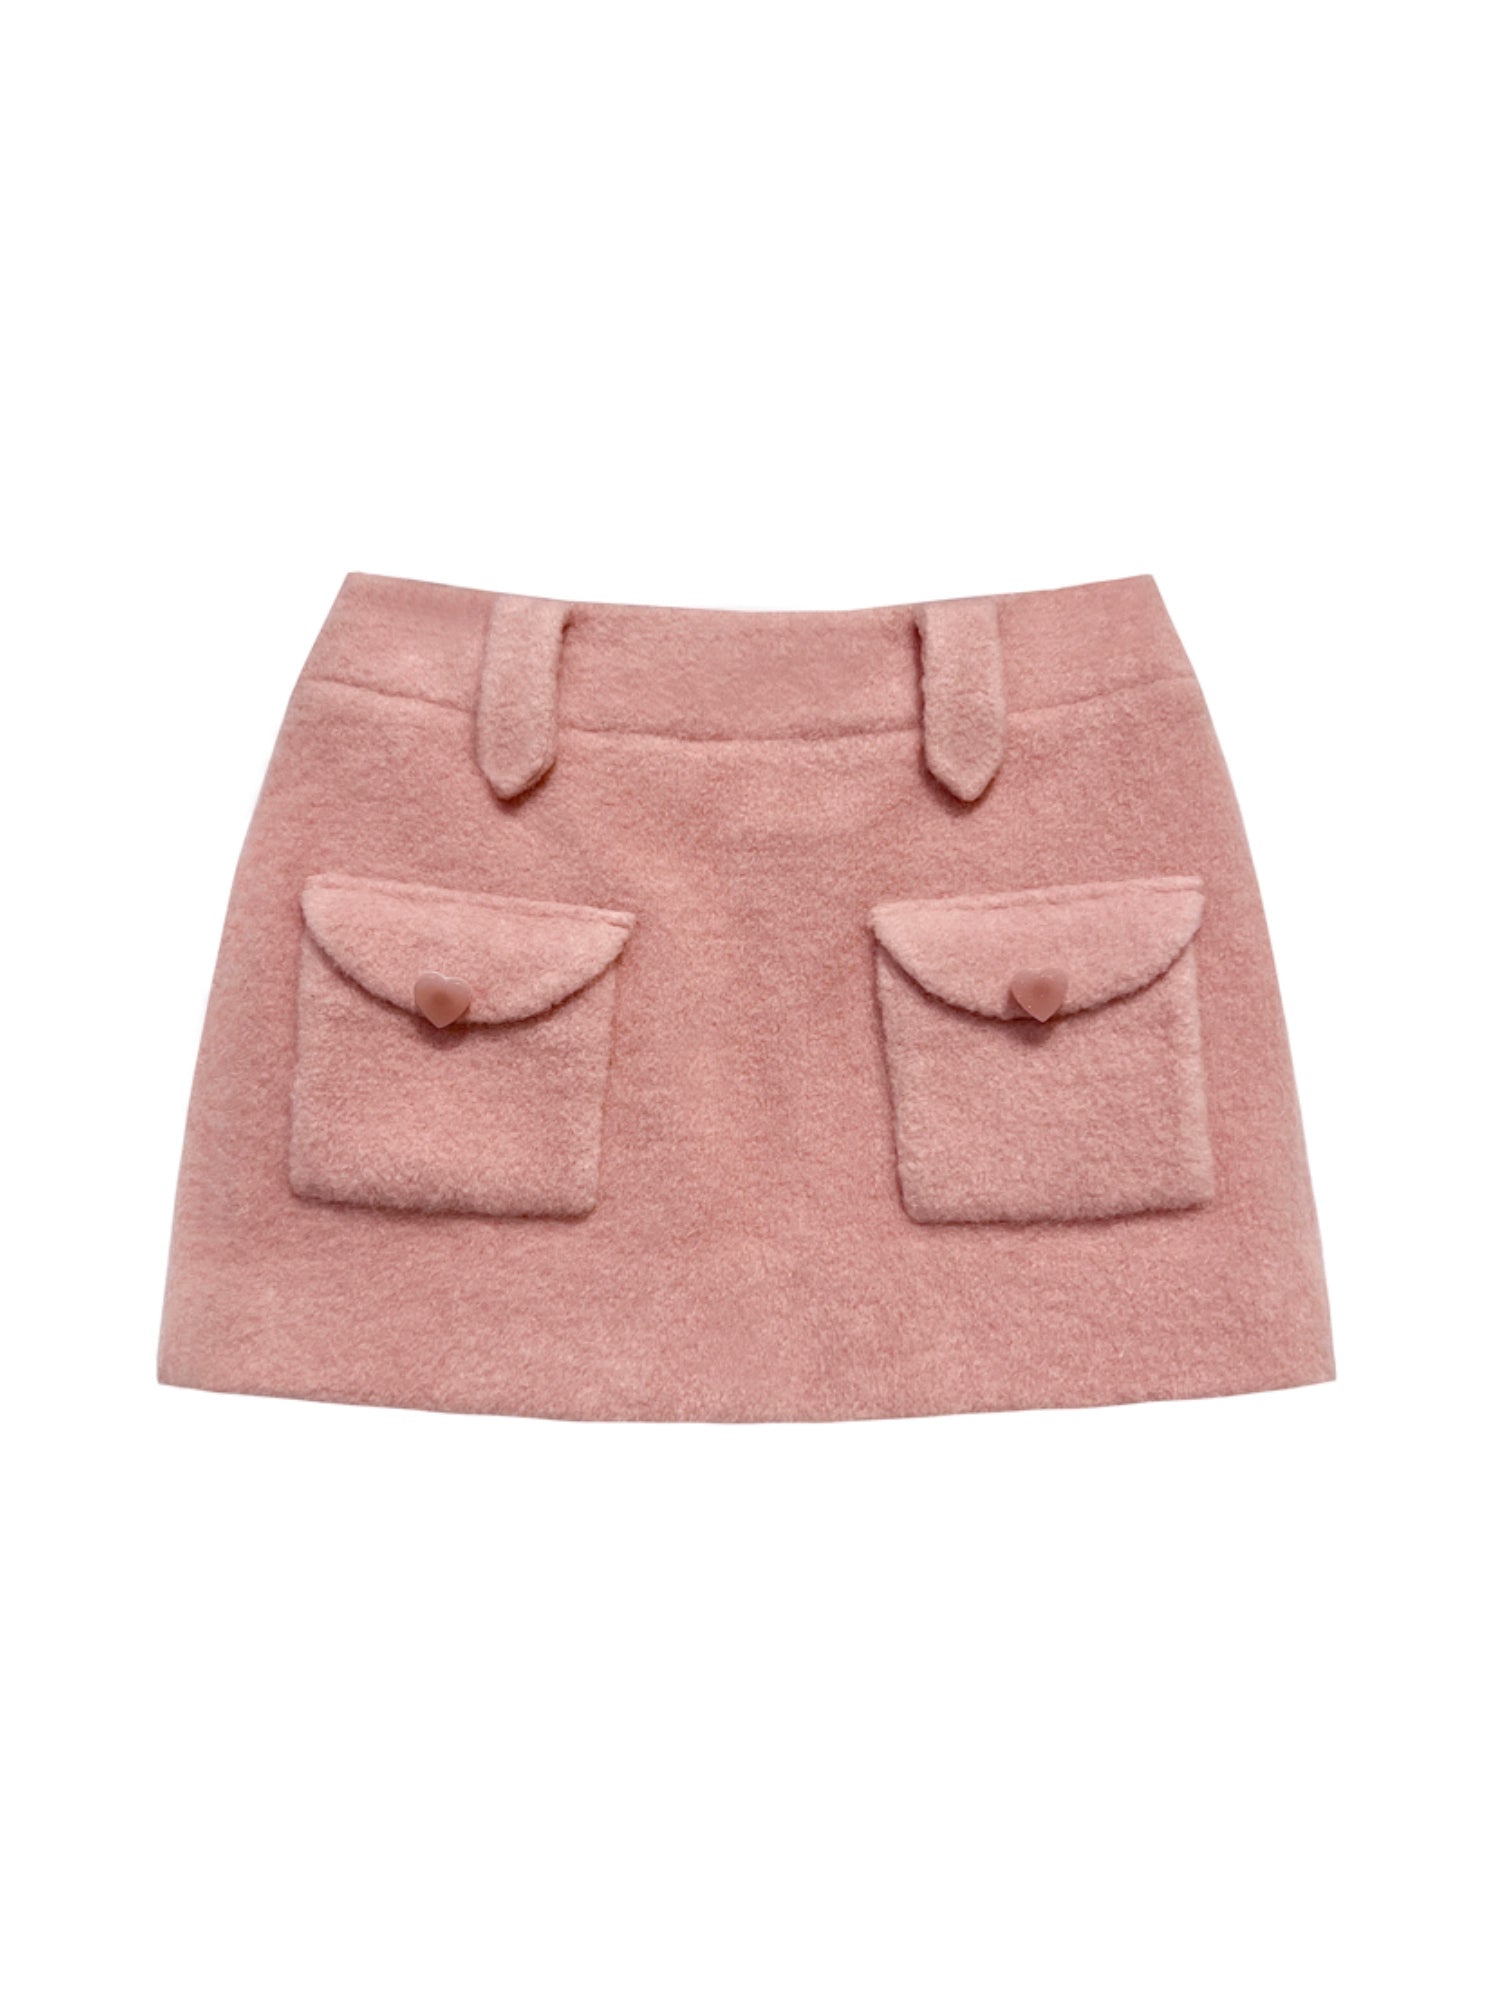 Peach Pink Woolen Skirt